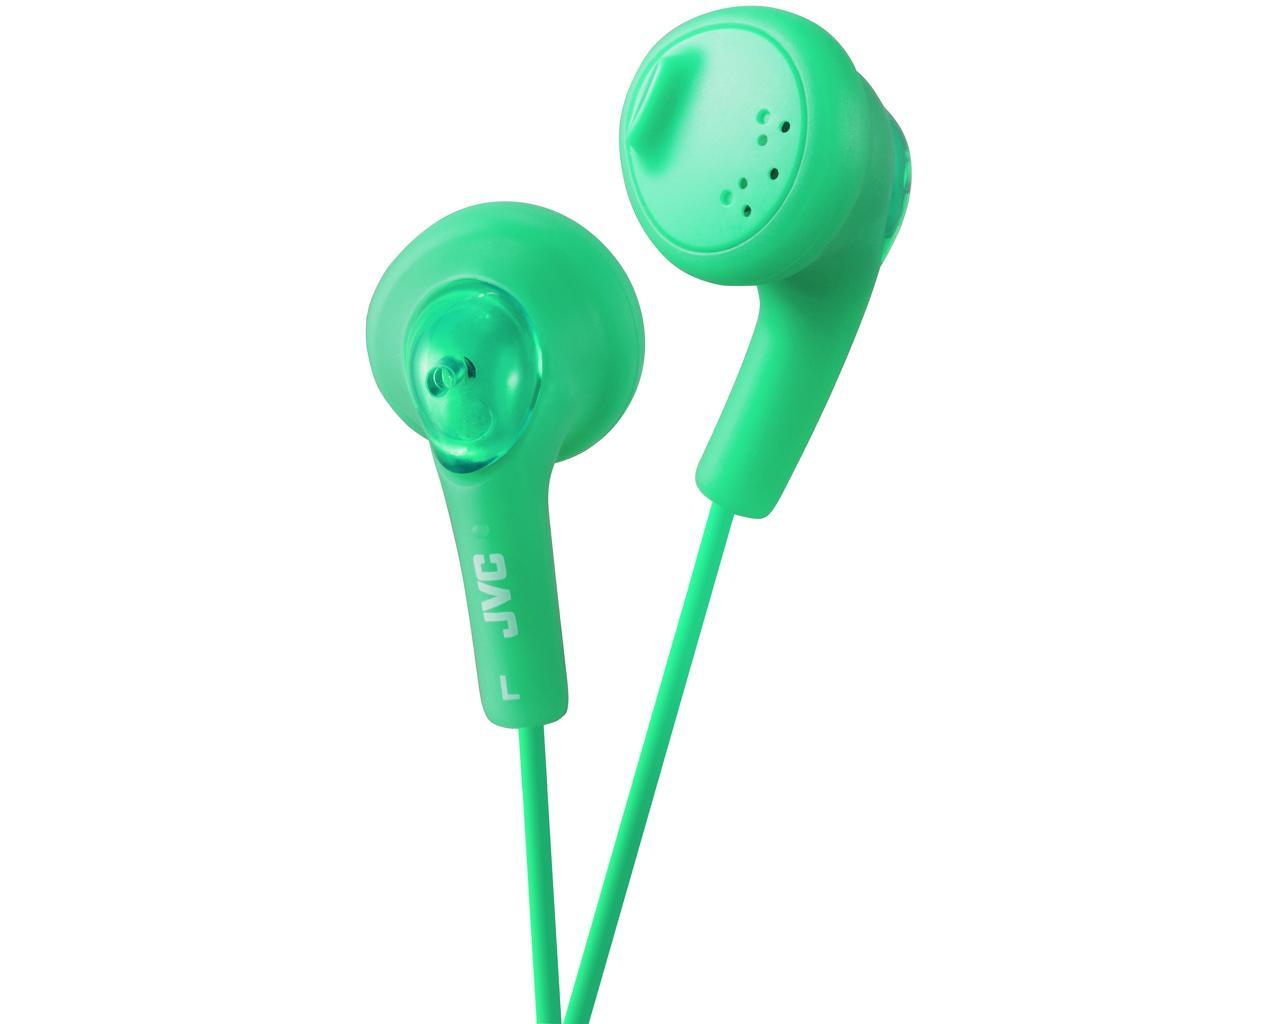 JVC HA-F160-G-E In-ear hoofdtelefoon groen